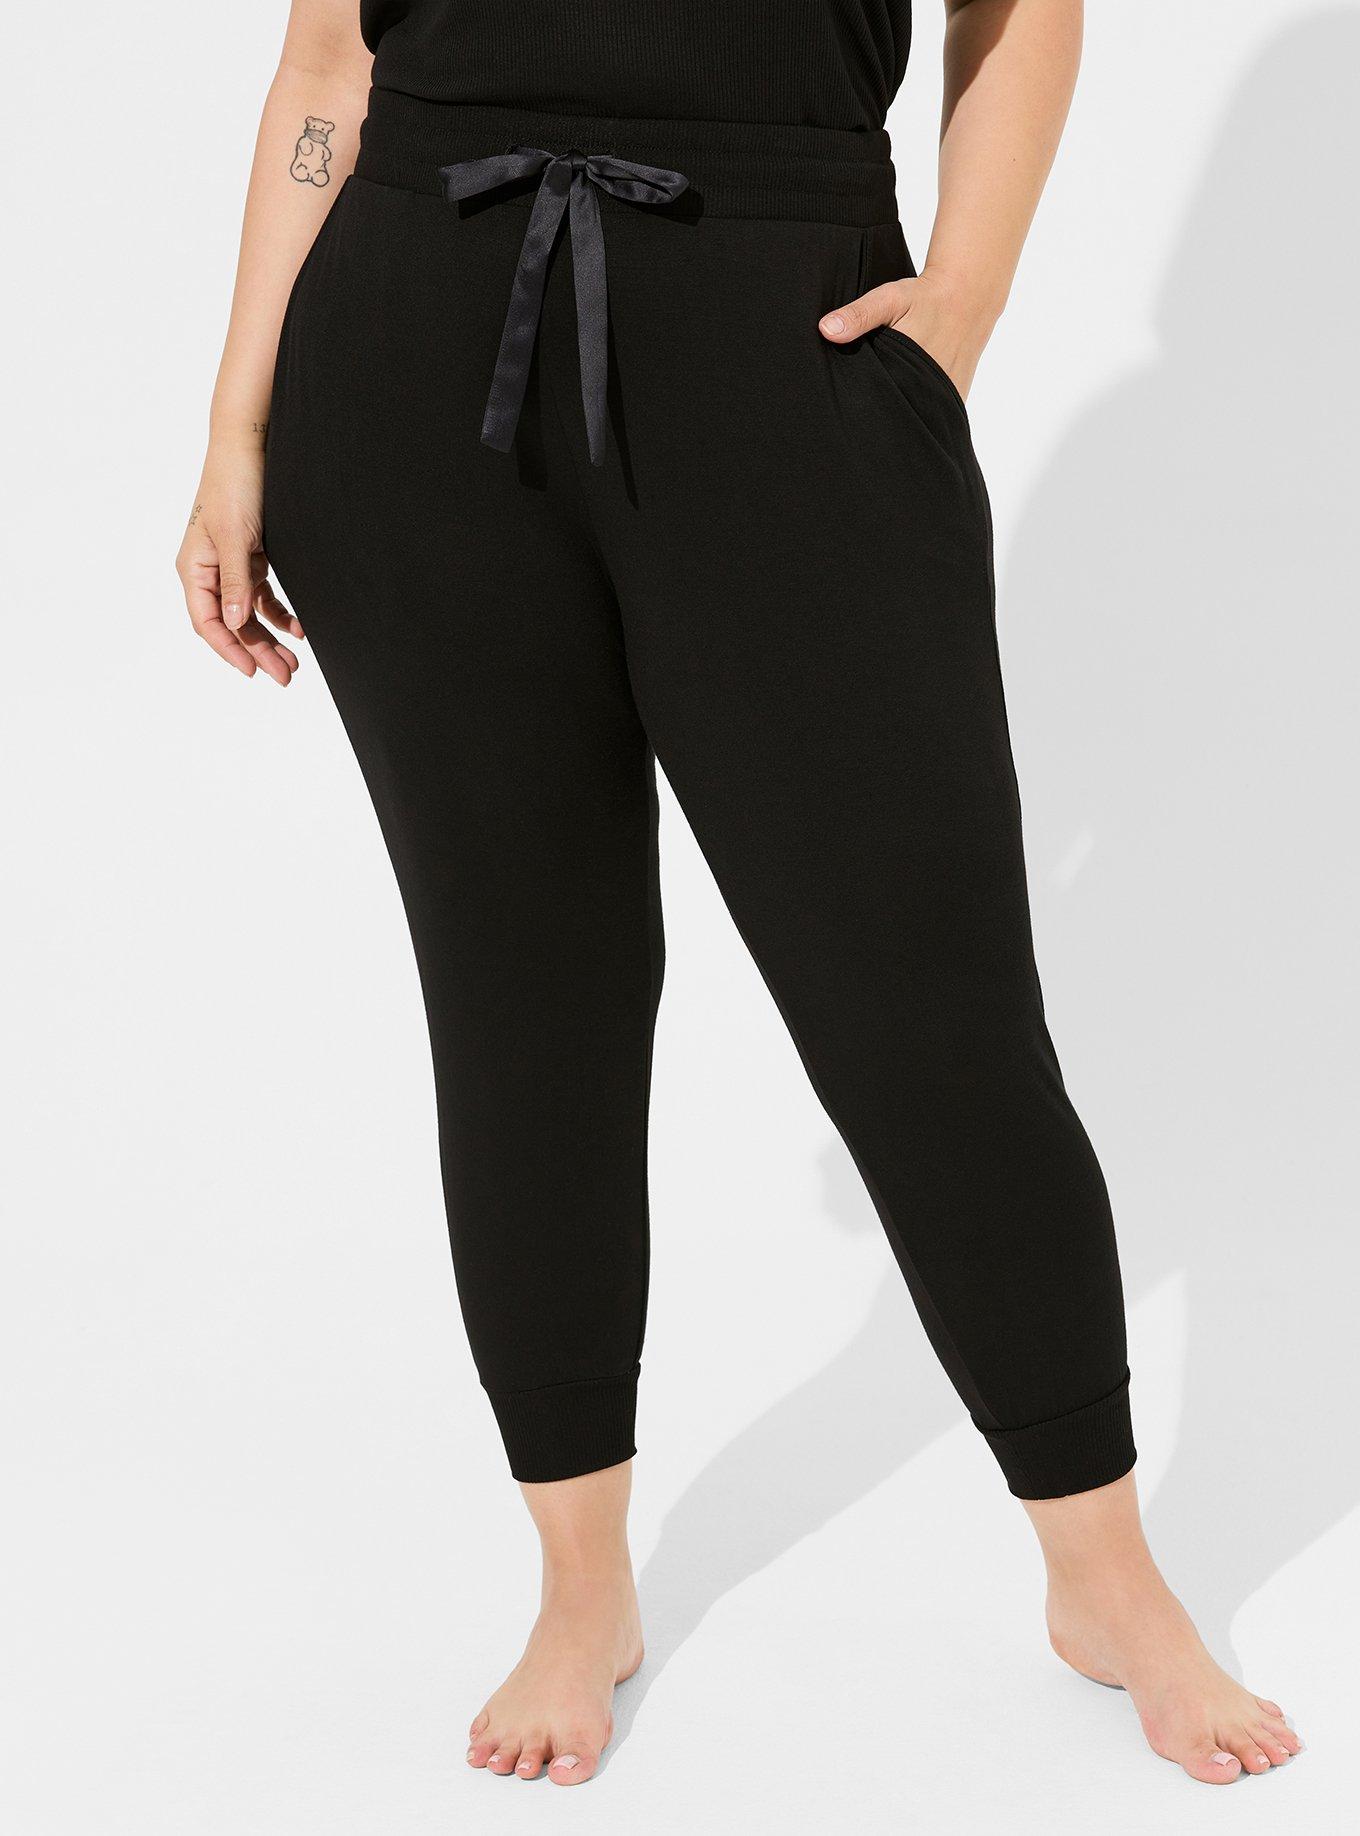 Shop Plus Size Active Jogger Crop Pant in Black, Sizes 12-30